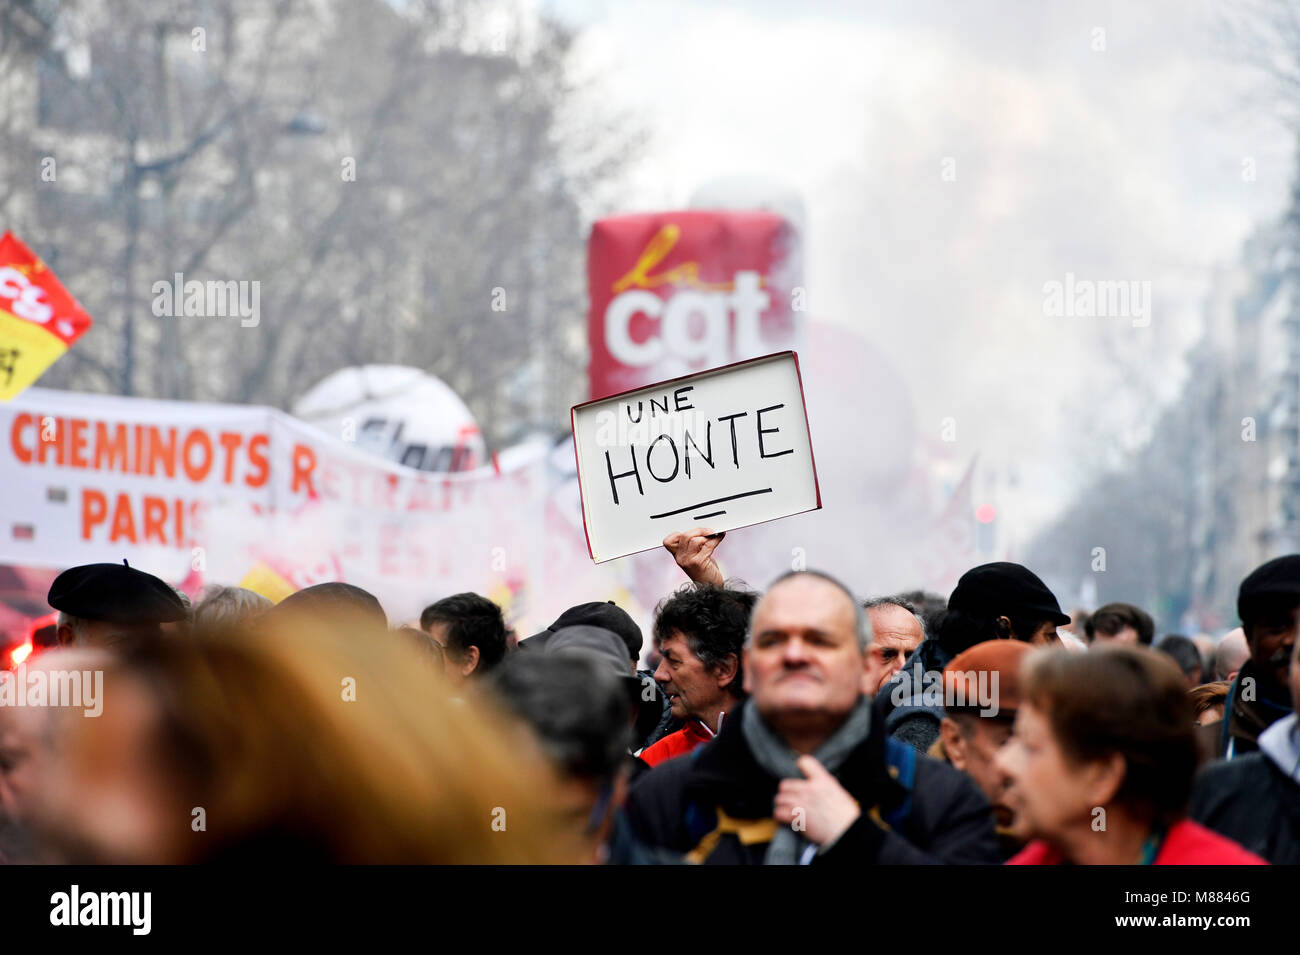 Montparnasse, Paris, France 15 mars 2018. Les travailleurs retraités protester contre l'augmentation des cotisations de sécurité sociale sur les retraites faibles (CSG). Crédit : Frédéric VIELCANET/Alamy Live News Banque D'Images